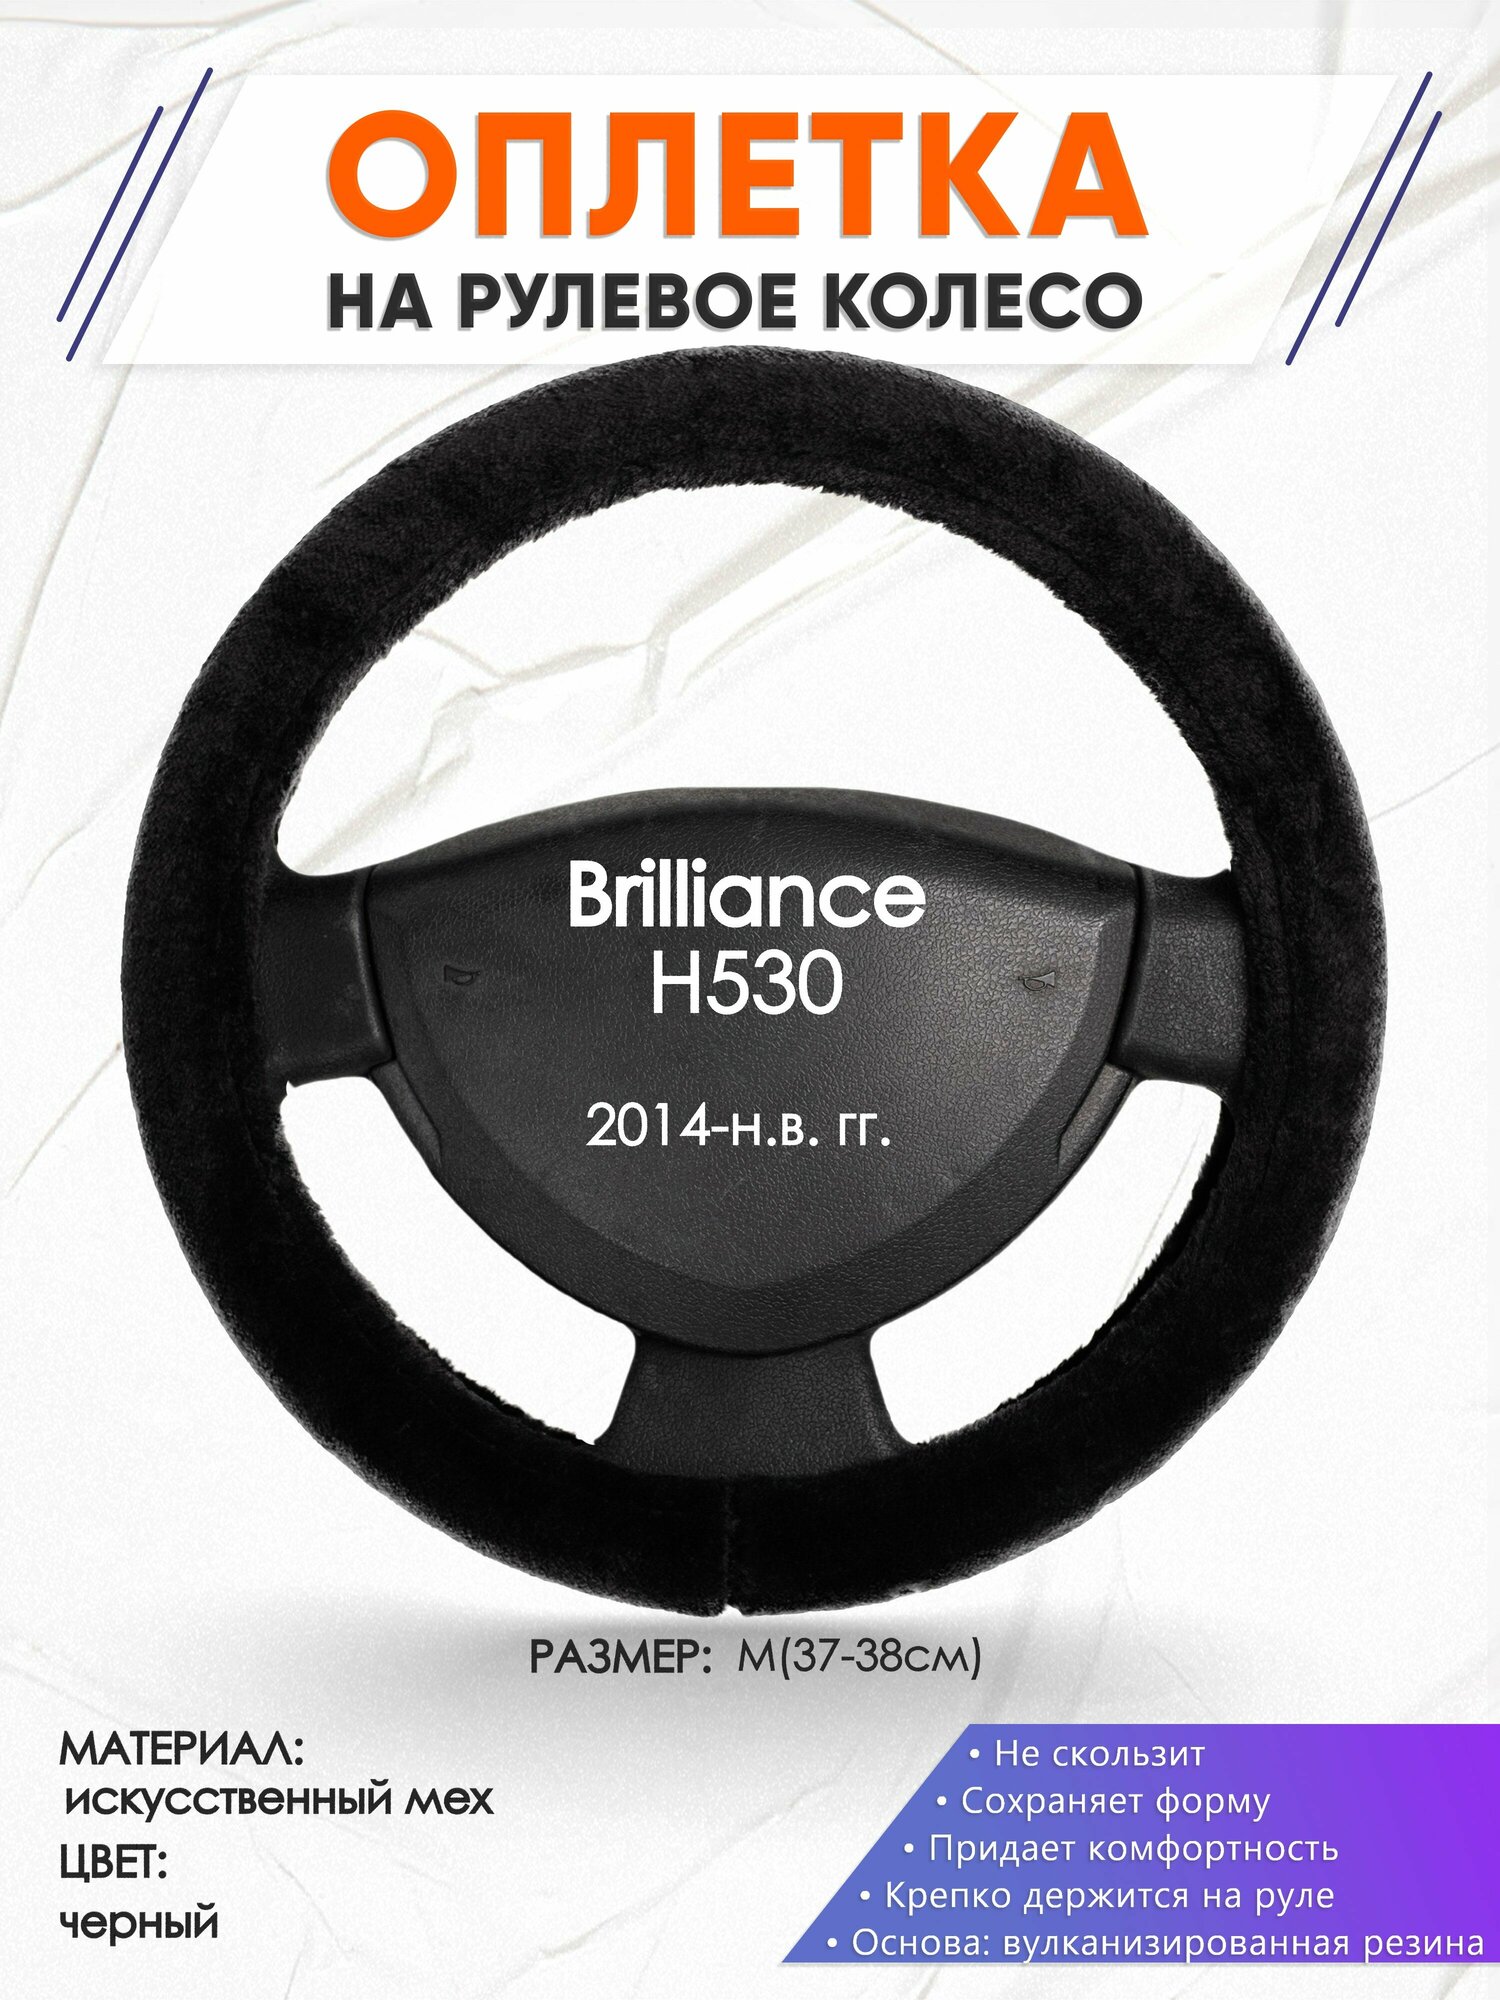 Оплетка наруль для Brilliance H530(Бриллианс Н530) 2014-н. в. годов выпуска, размер M(37-38см), Искусственный мех 45